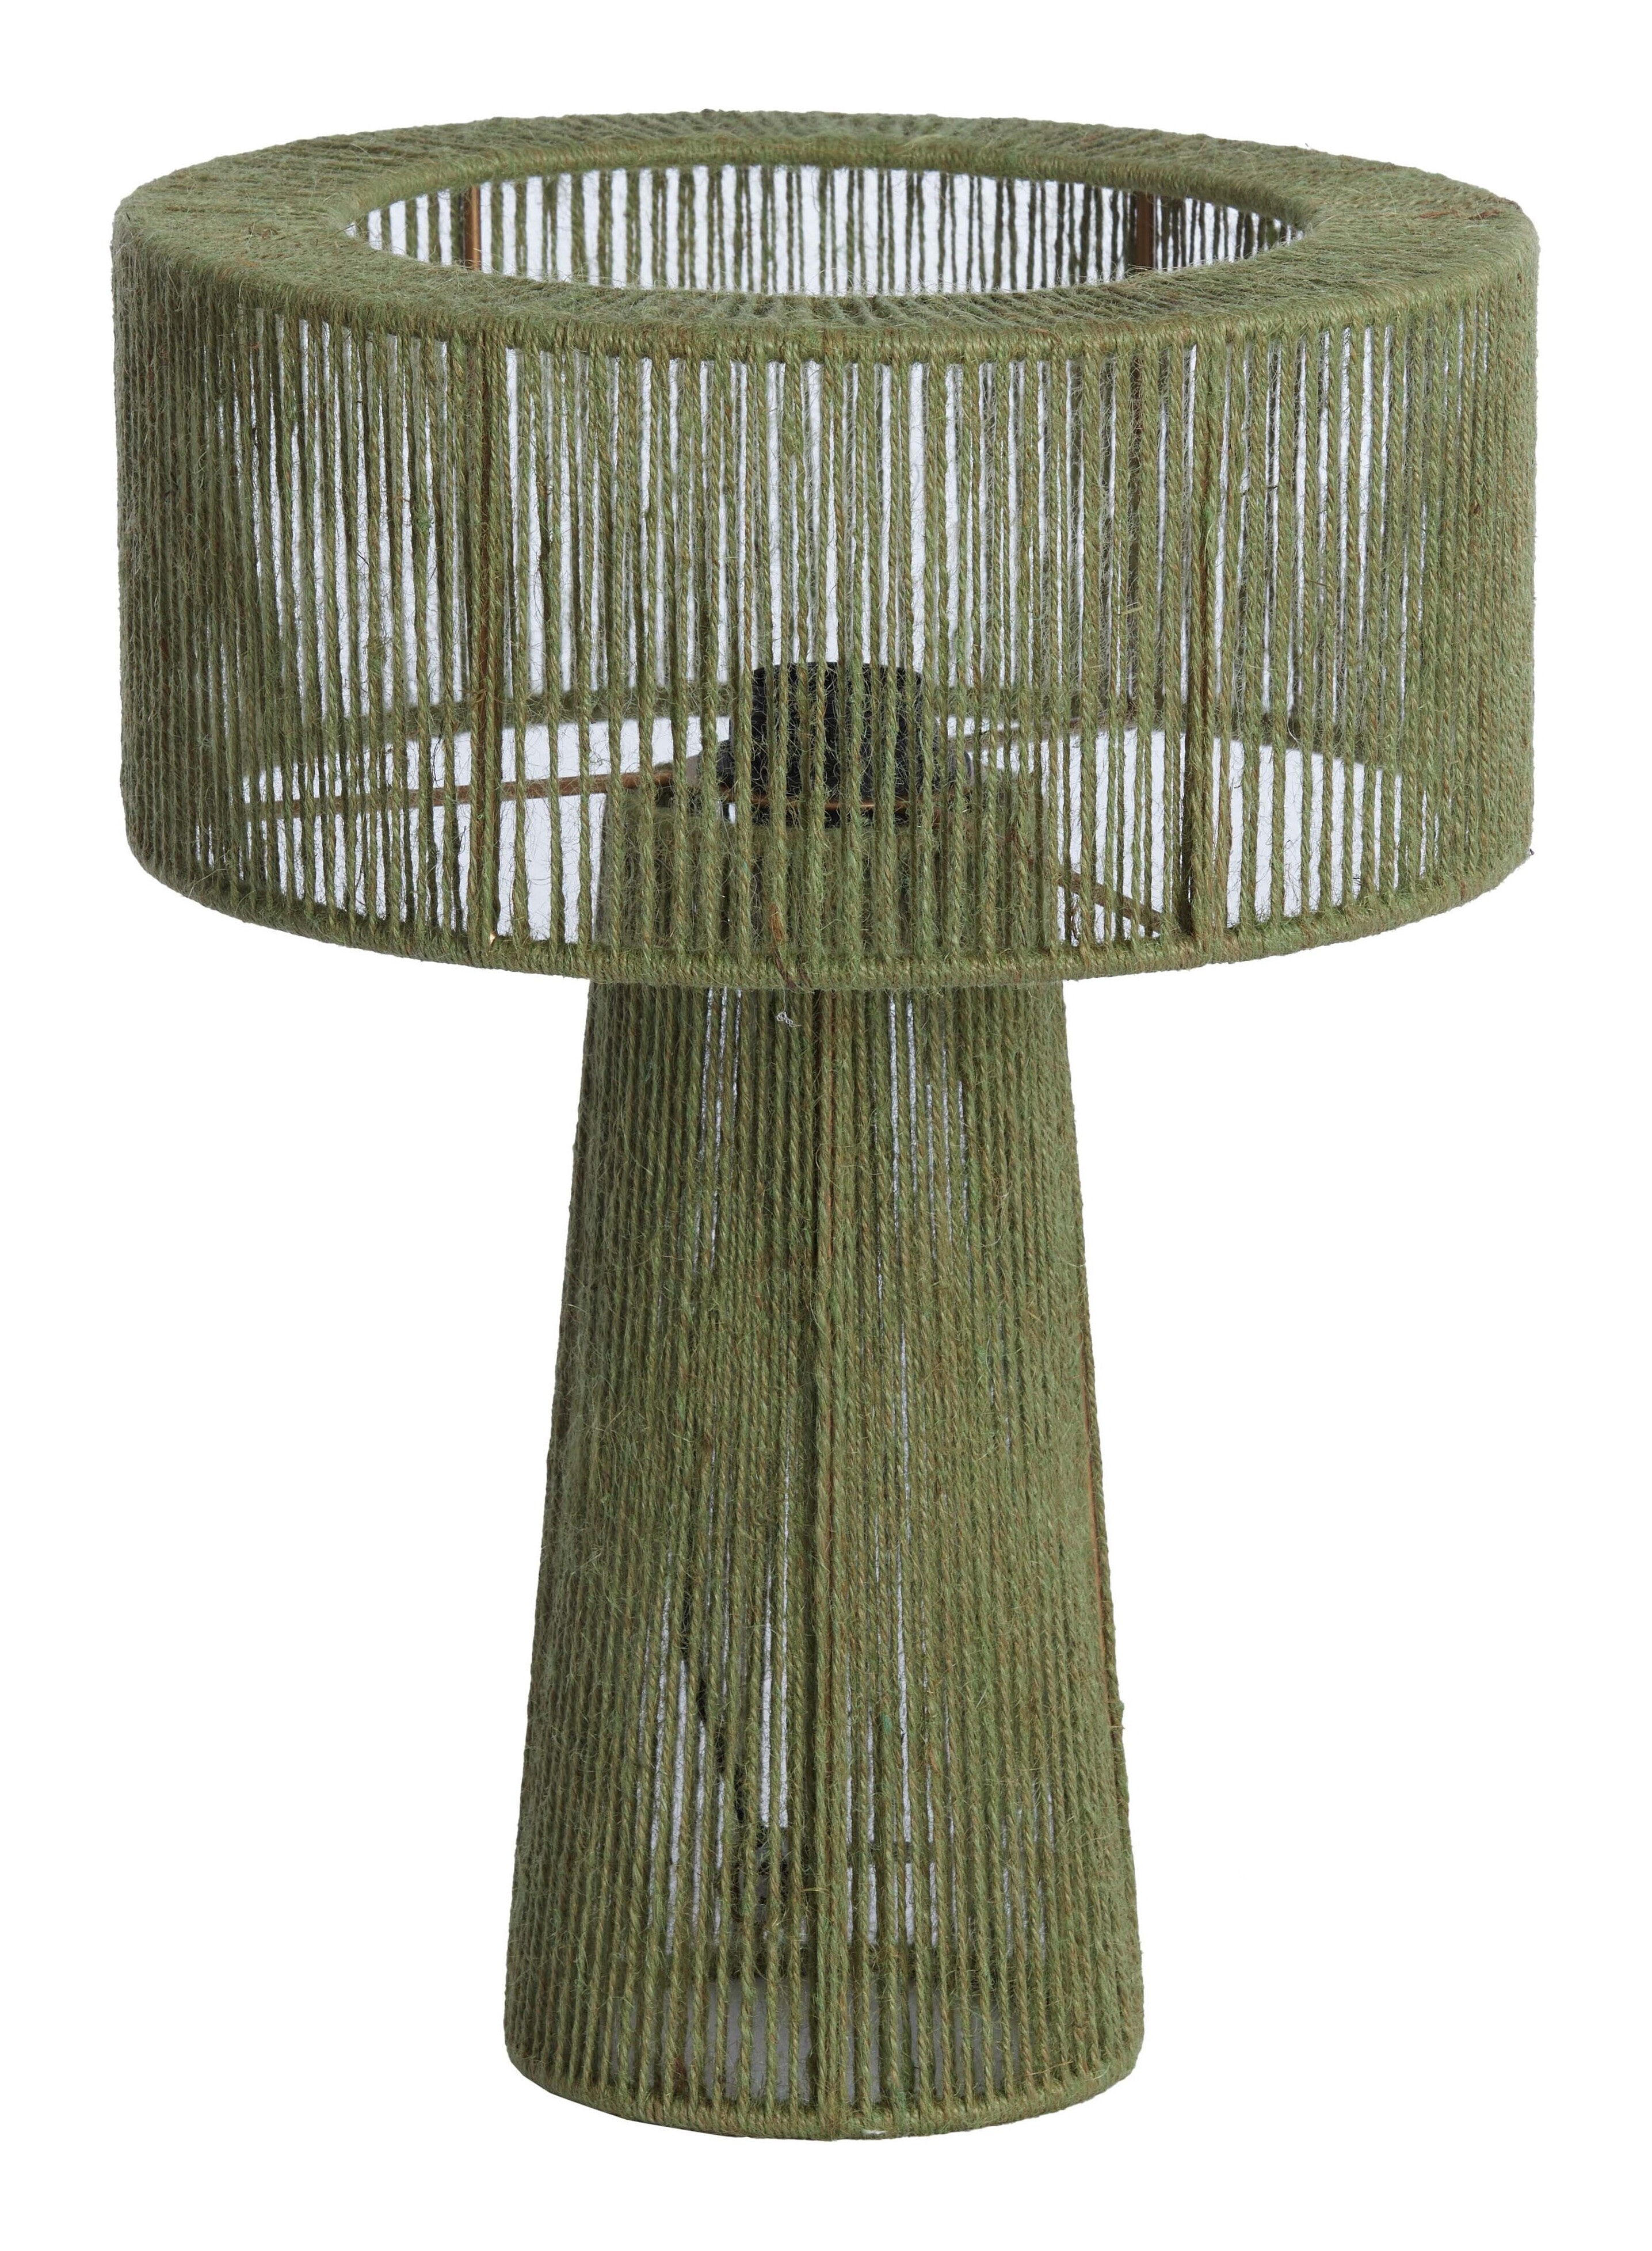 Light & Living Tafellamp Selva Jute, 40cm - Groen